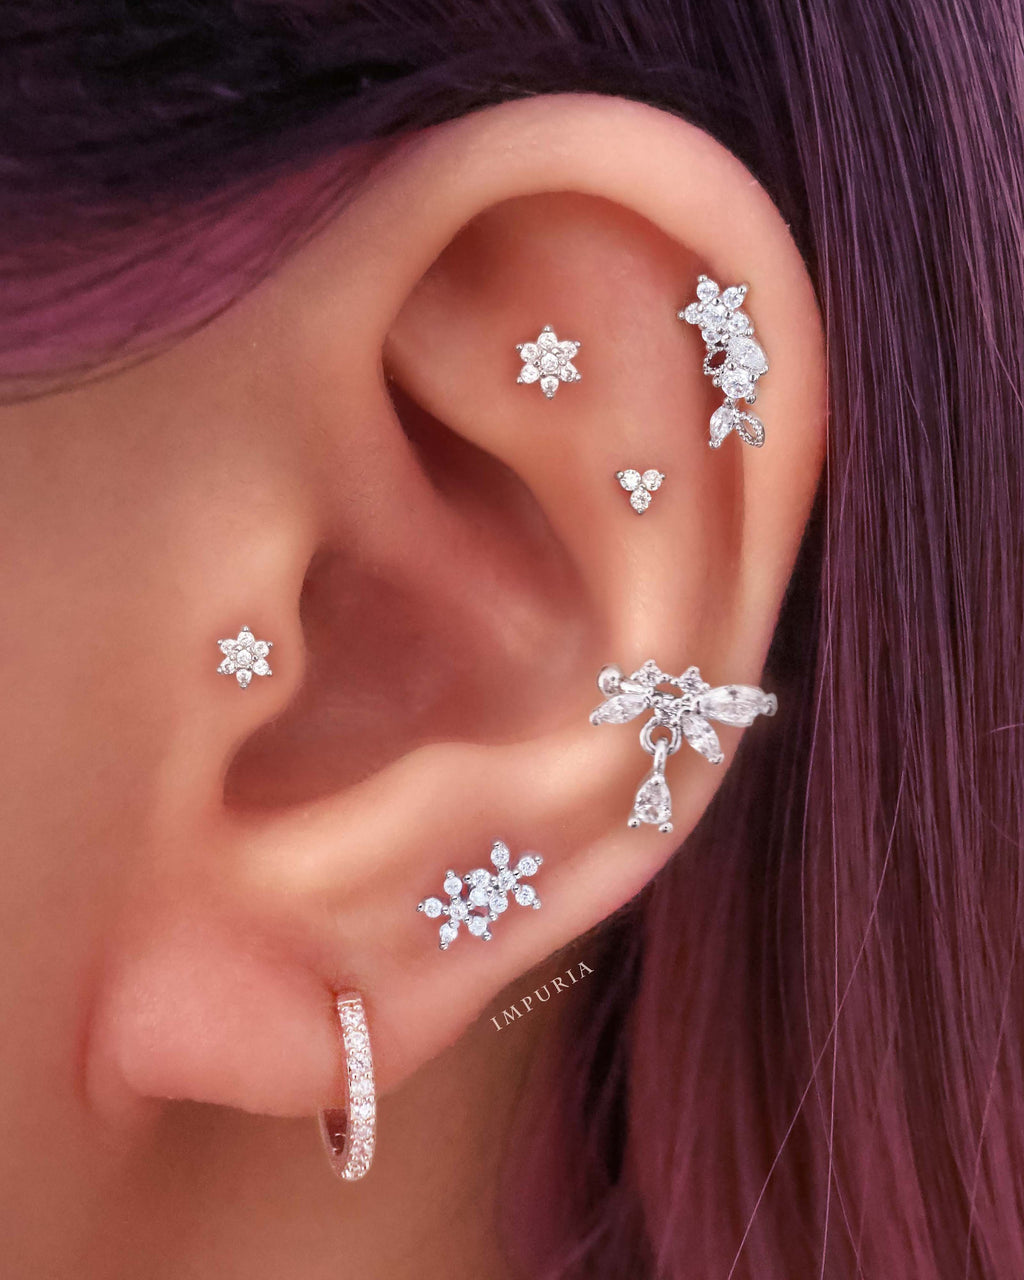 Silver Daisy Flower Helix Earring Flower Forward Helix Earring Tragus Piercing  Cartilage Piercing Conch Earring Triple Forward Helix Earring - Etsy |  Forward helix earrings, Helix earrings, Etsy earrings